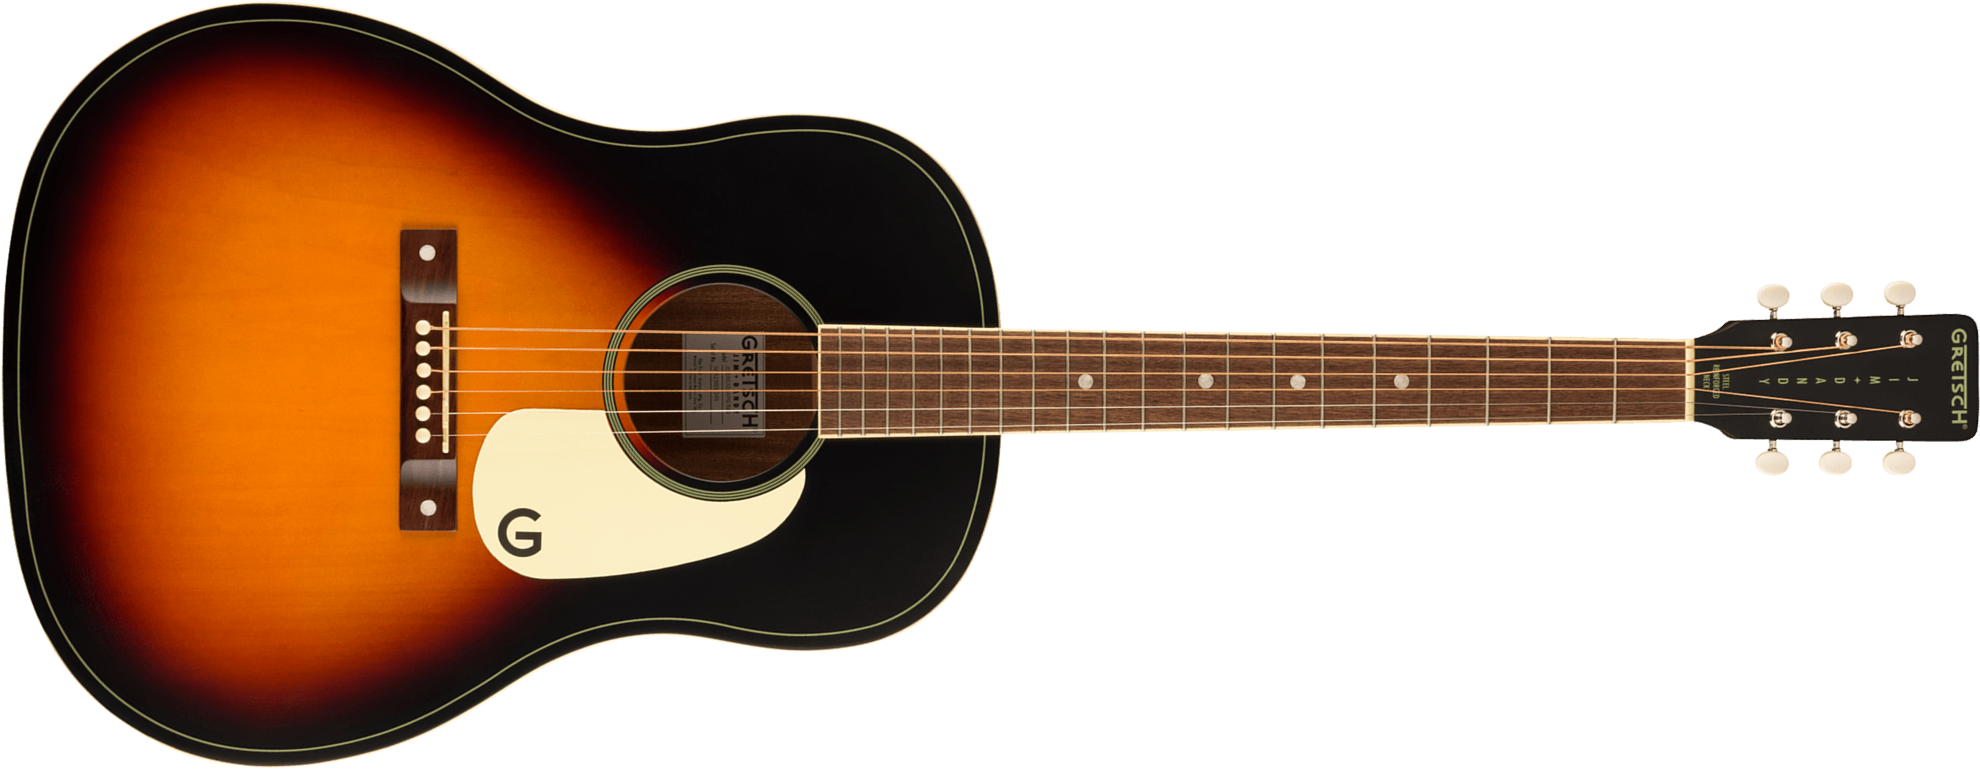 Gretsch Jim Dandy Dreadnought Tout Tilleul Noy - Rex Burst - Travel acoustic guitar - Main picture